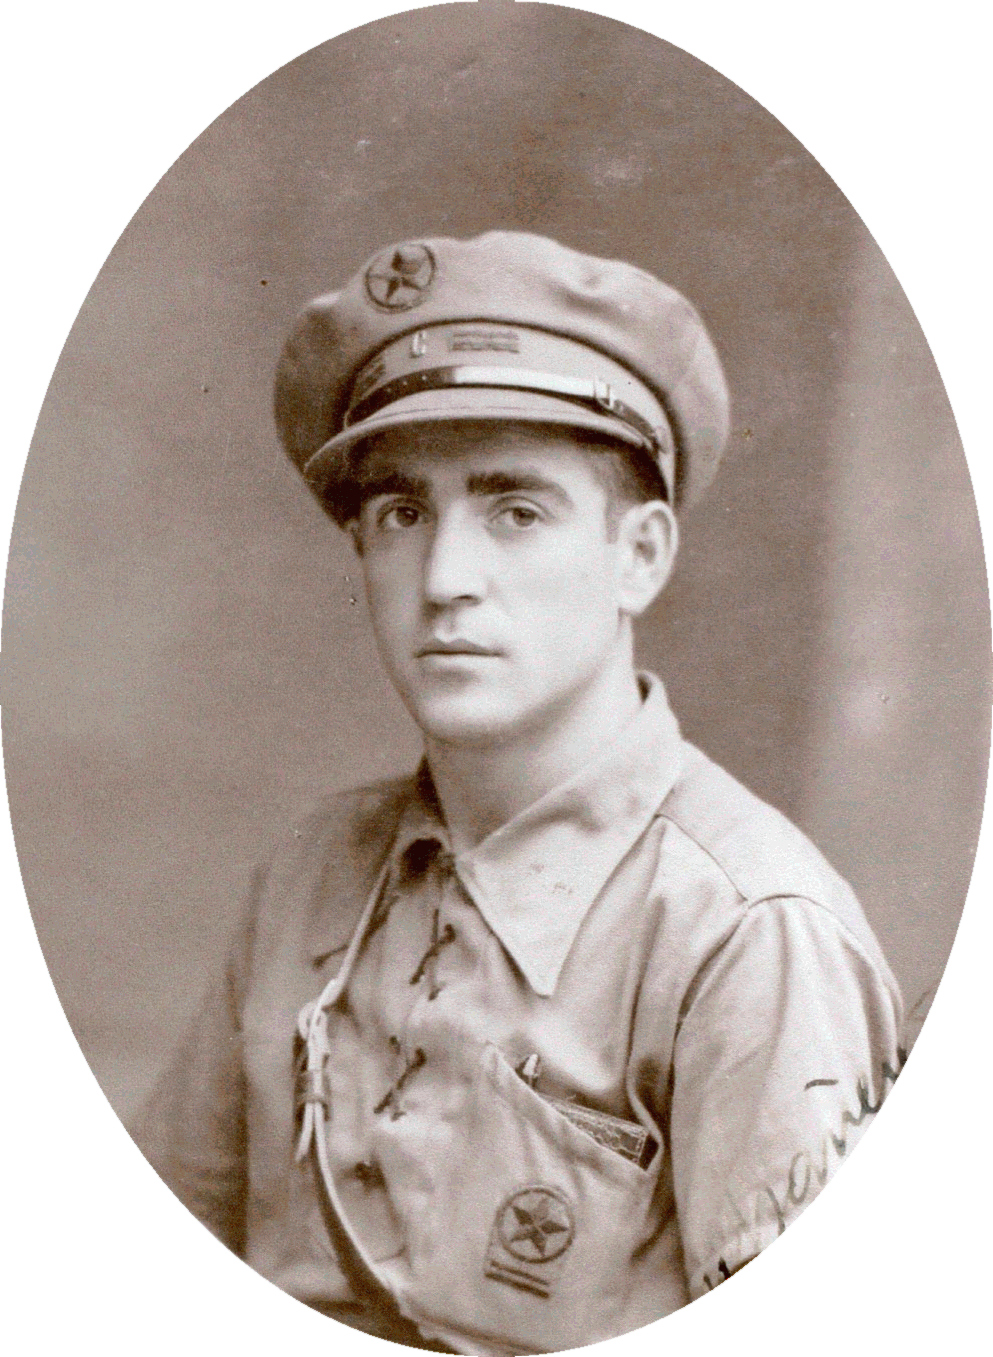 Félix Salcedo Arellano, comissari del I Batalló de la 119 Brigada Mixta